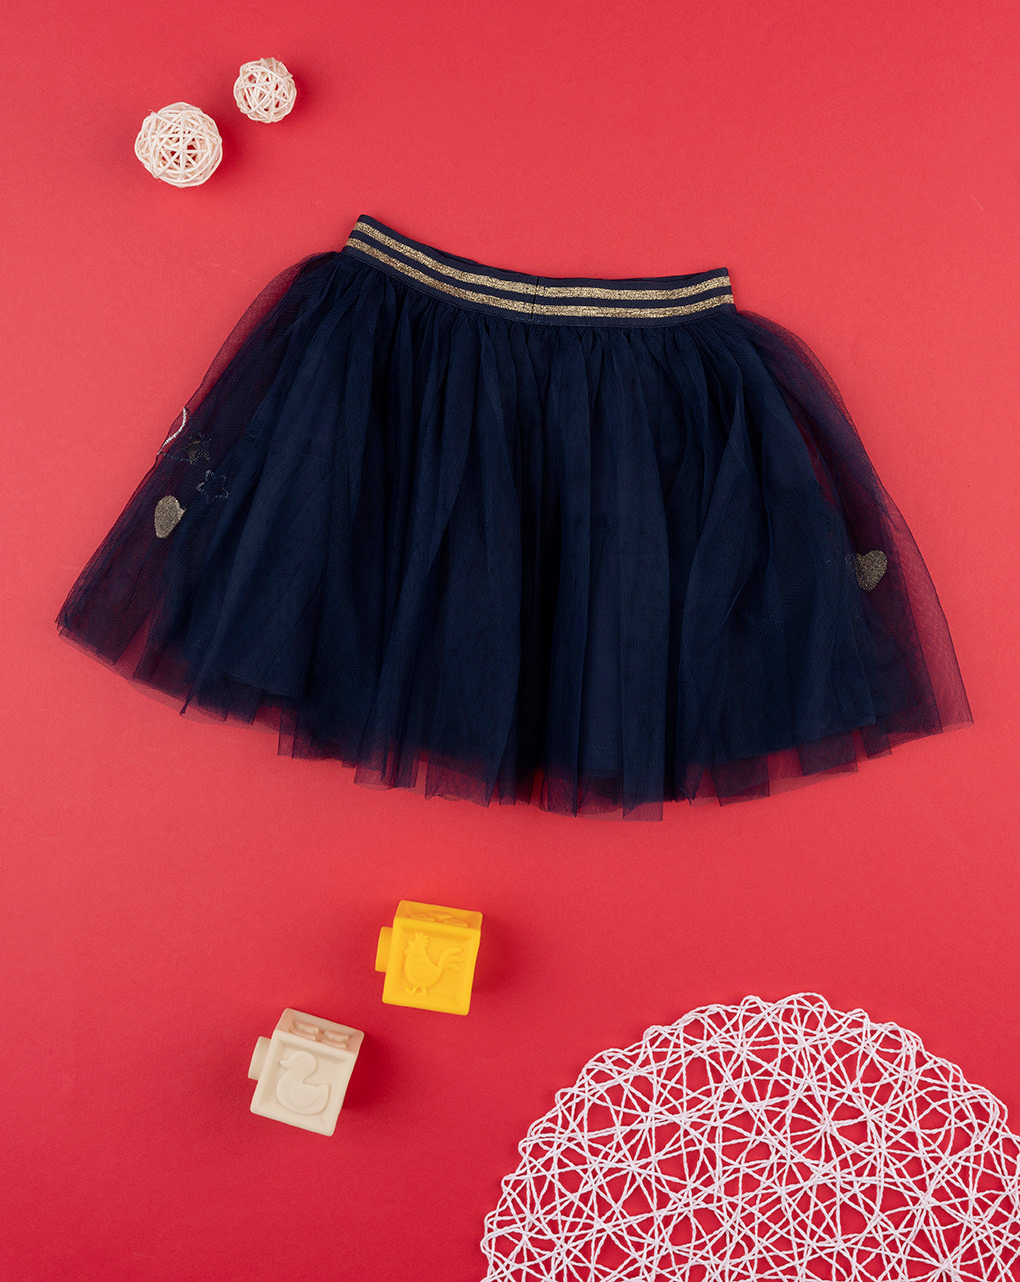 παιδική φούστα από τούλι μπλε με καρδούλες για κορίτσι - Prénatal